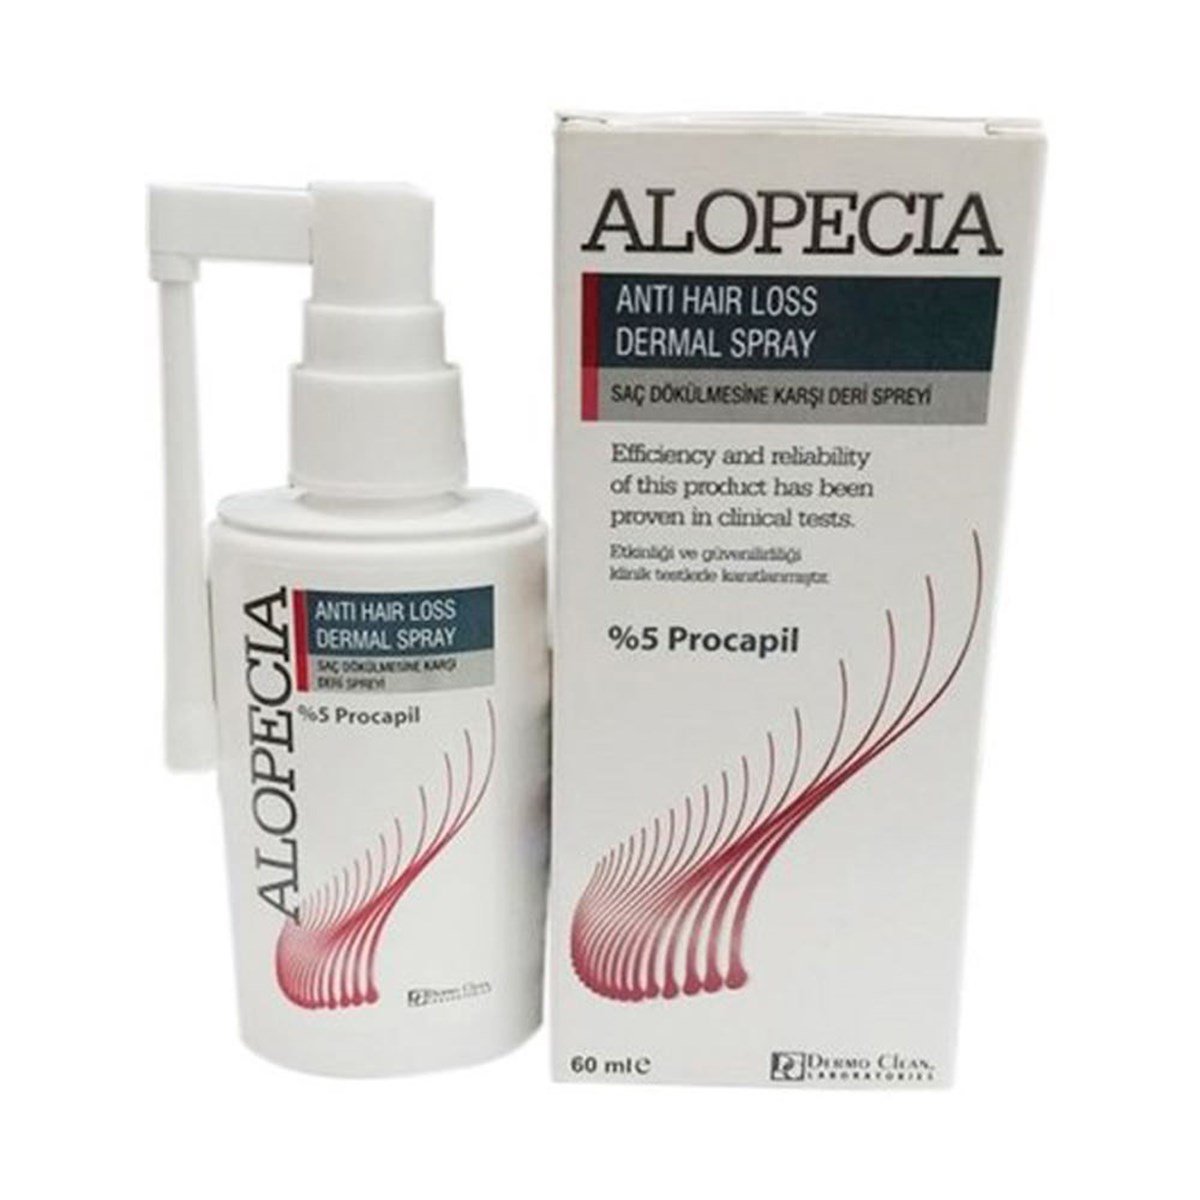 Alopecia Anti Hair Loss Serum Dermal Spray 60 Ml - %5 Procapil Saç Serumu  DepoEczanem.com | Dermokozmetik Cilt & Vücut Bakımı, Vitamin & Mineral –  Takviye Edici Gıda ve Reçetesiz Sağlık Ürünleri